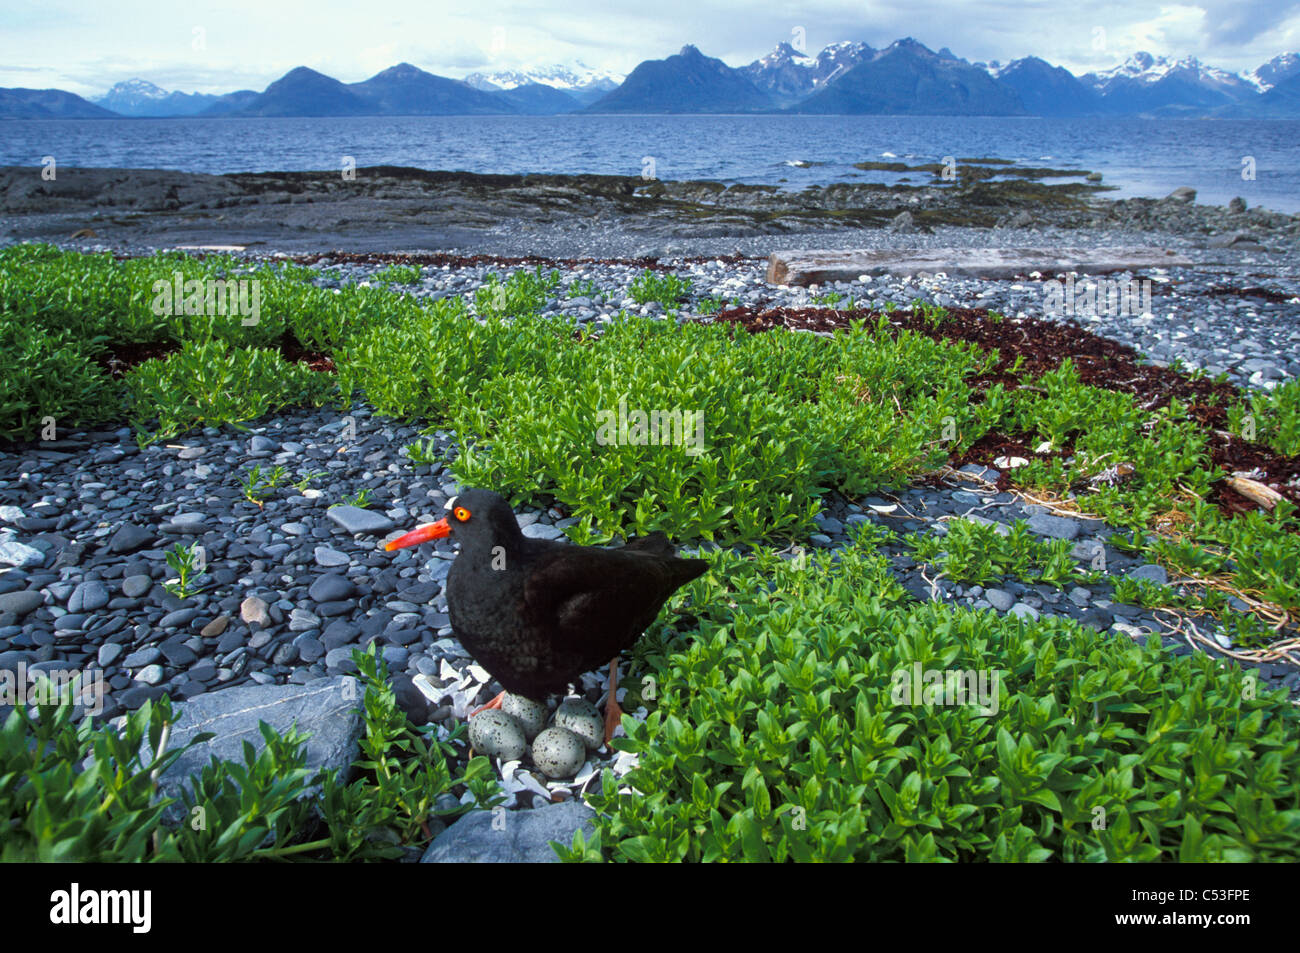 Oystercatcher nero sul nido che mostra le 4 uova con porta Gravina e Chugach Mountains in background, Prince William Sound, Alaska Foto Stock